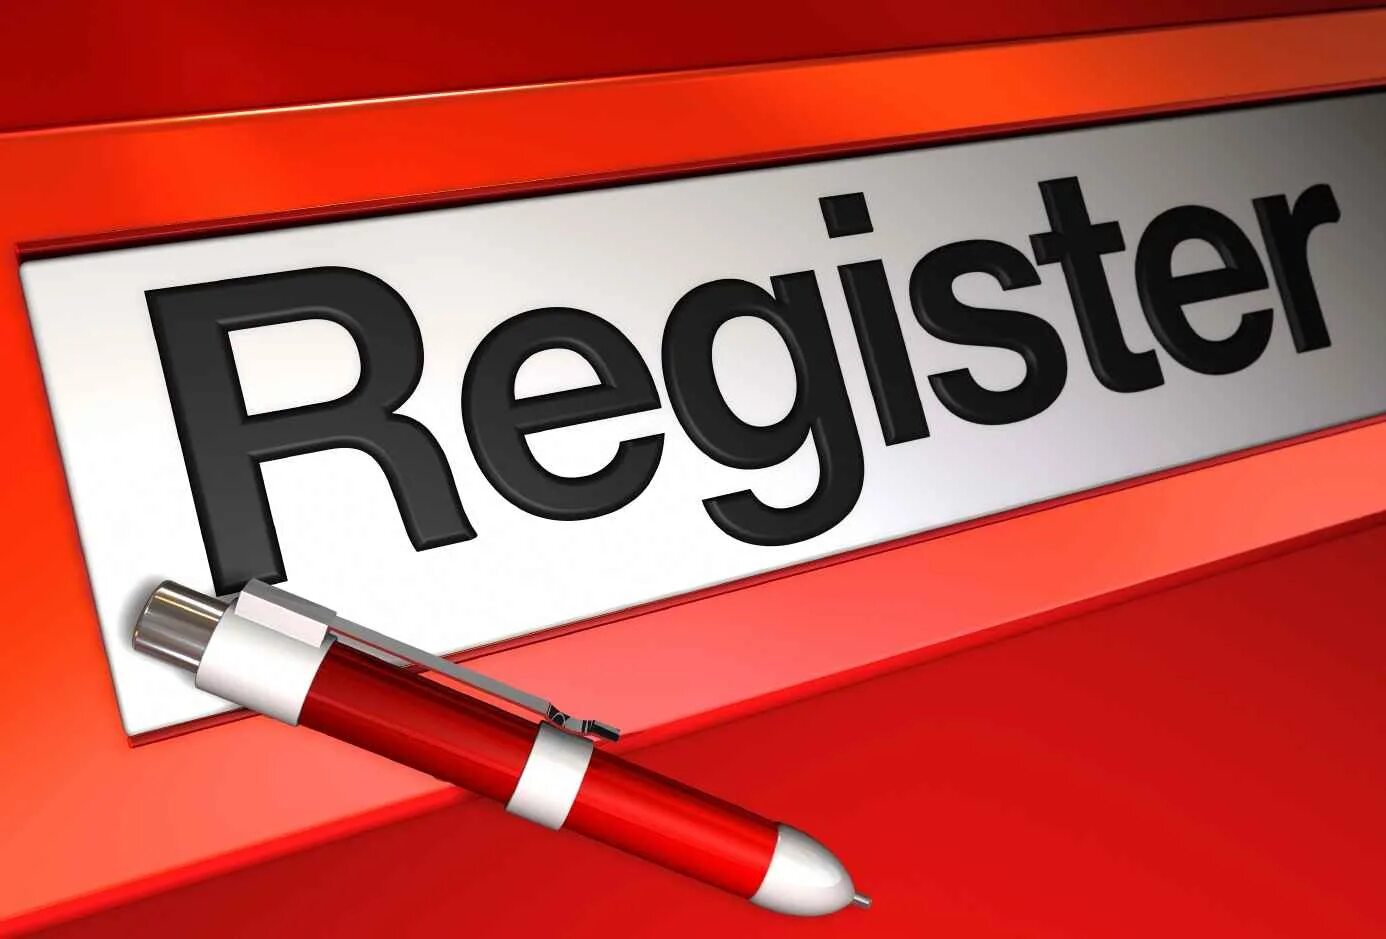 Регистрация картинки. Регистрация. Регистрация картинка. Registration картинки. Надпись Registration.